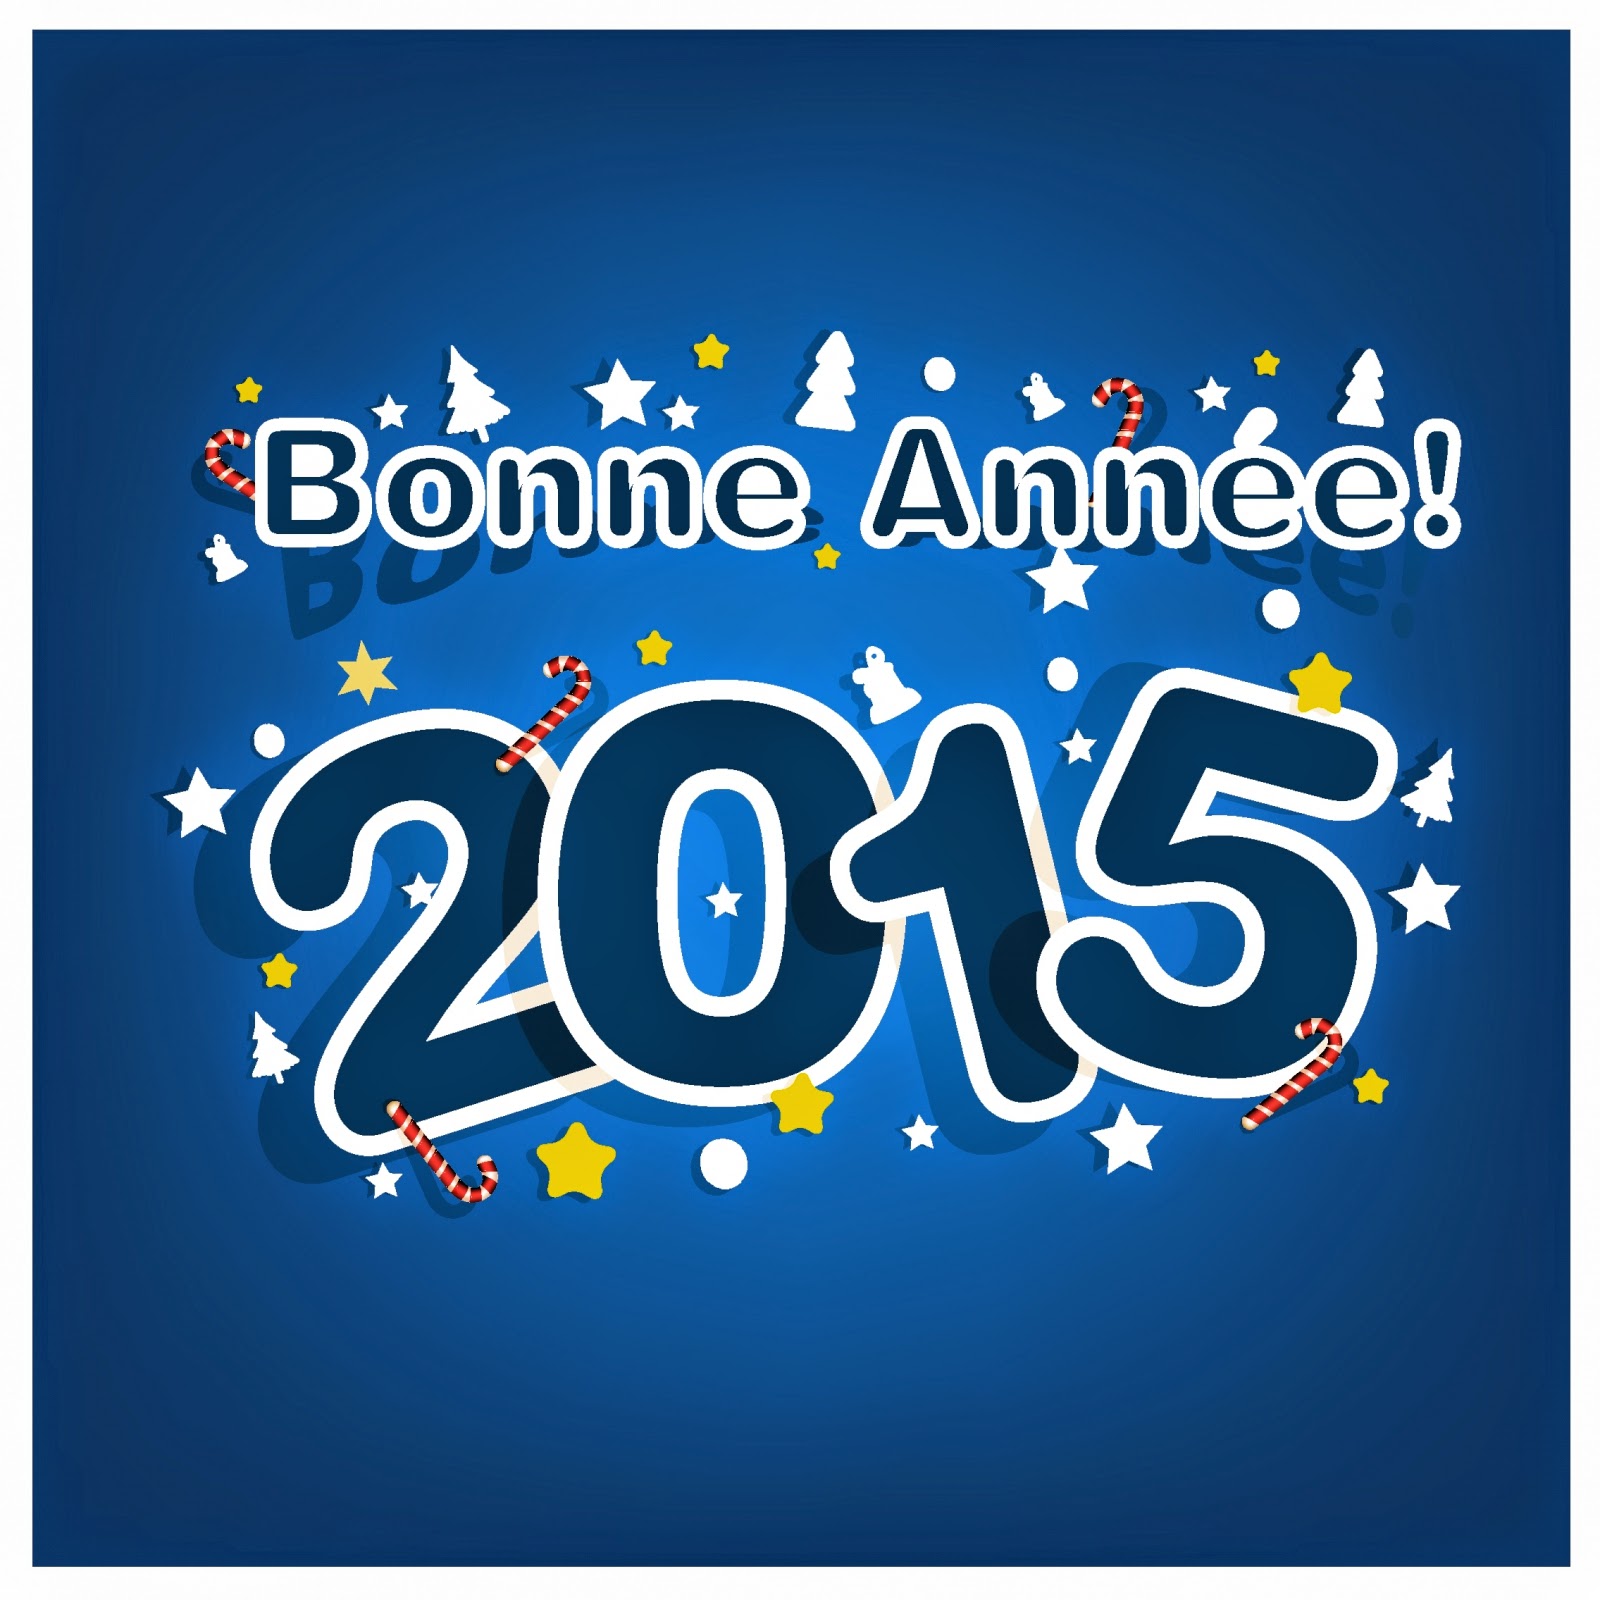 clipart anime bonne annee 2015 - photo #42